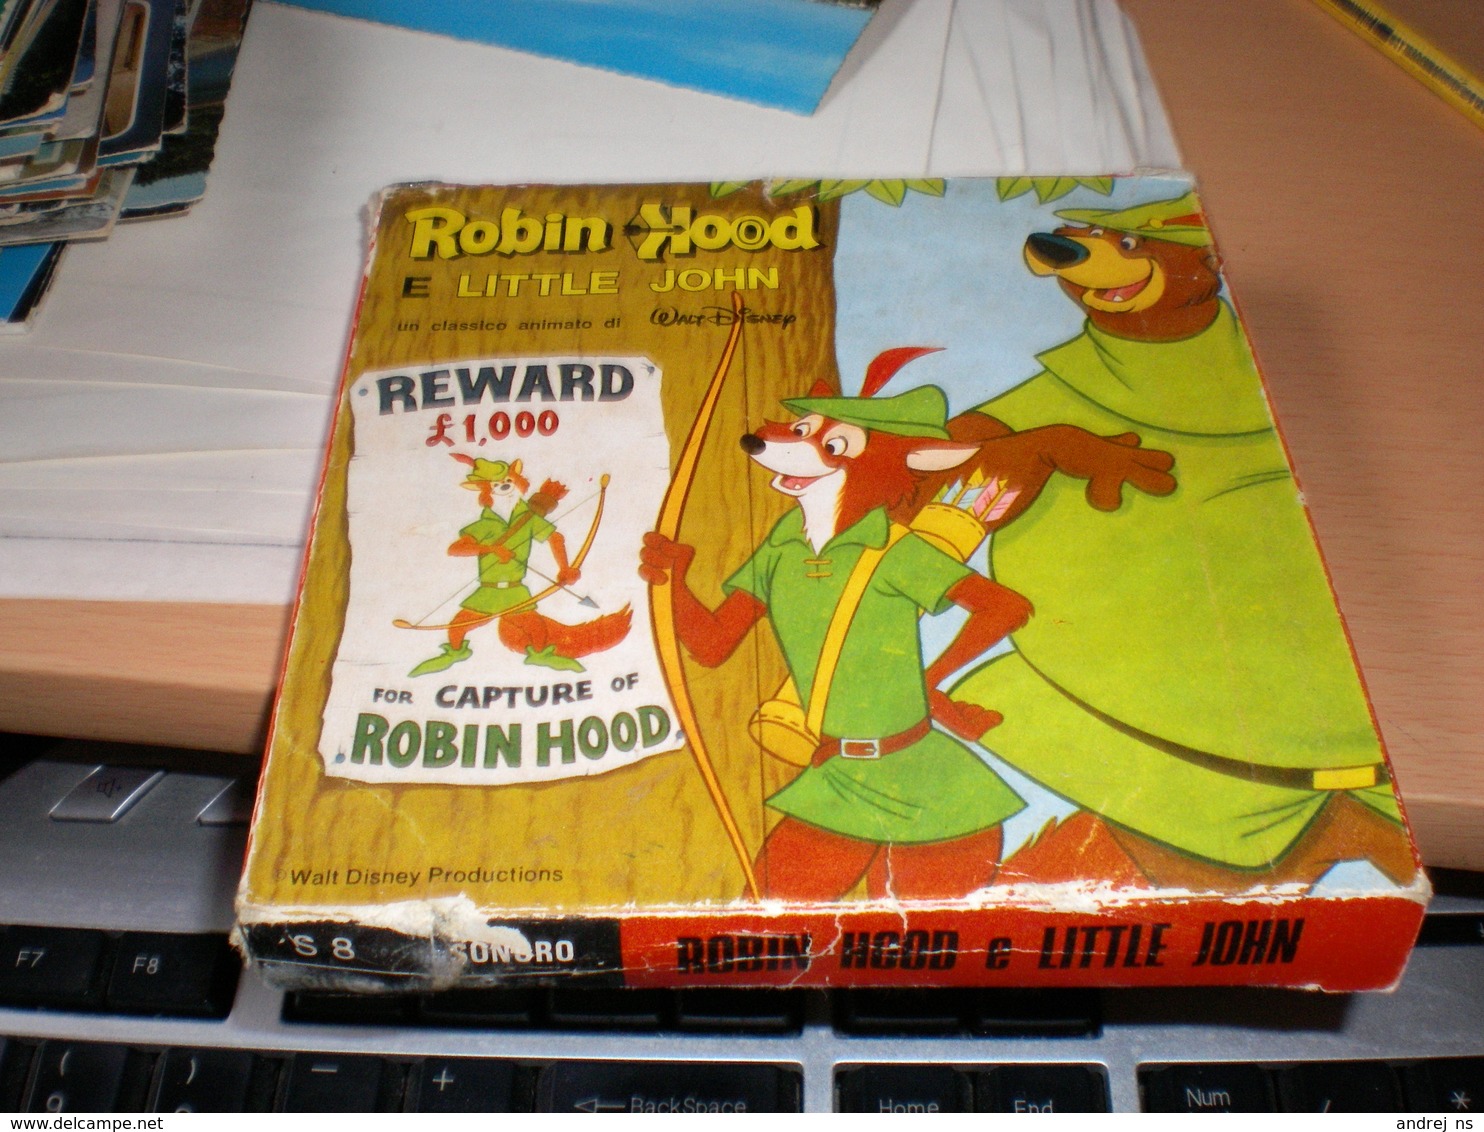 Walt Disney Robin Hood E Little John   8mm Films - 35mm -16mm - 9,5+8+S8mm Film Rolls